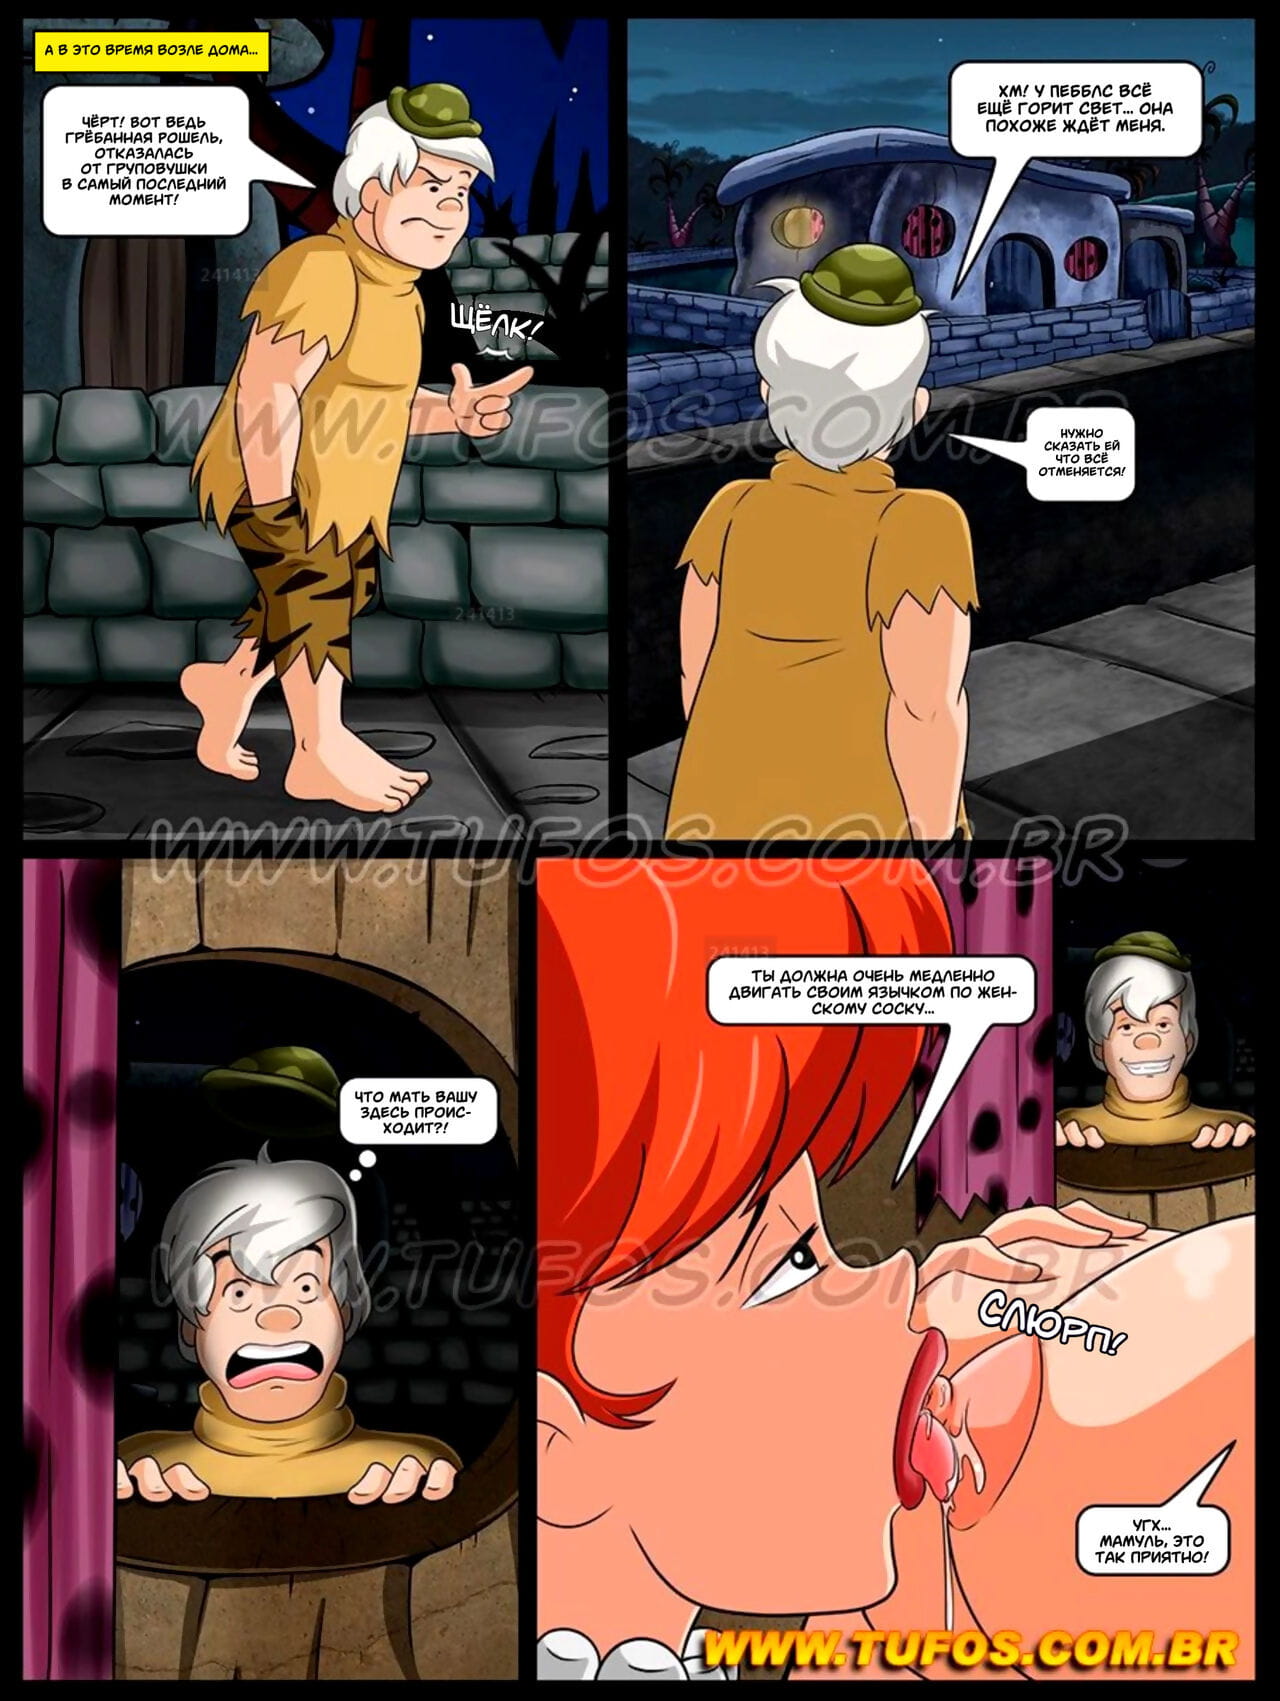 The Flintstones #2: Talking with daughter about sex - Флинстоуны #2: Разговор с дочерью о сексе